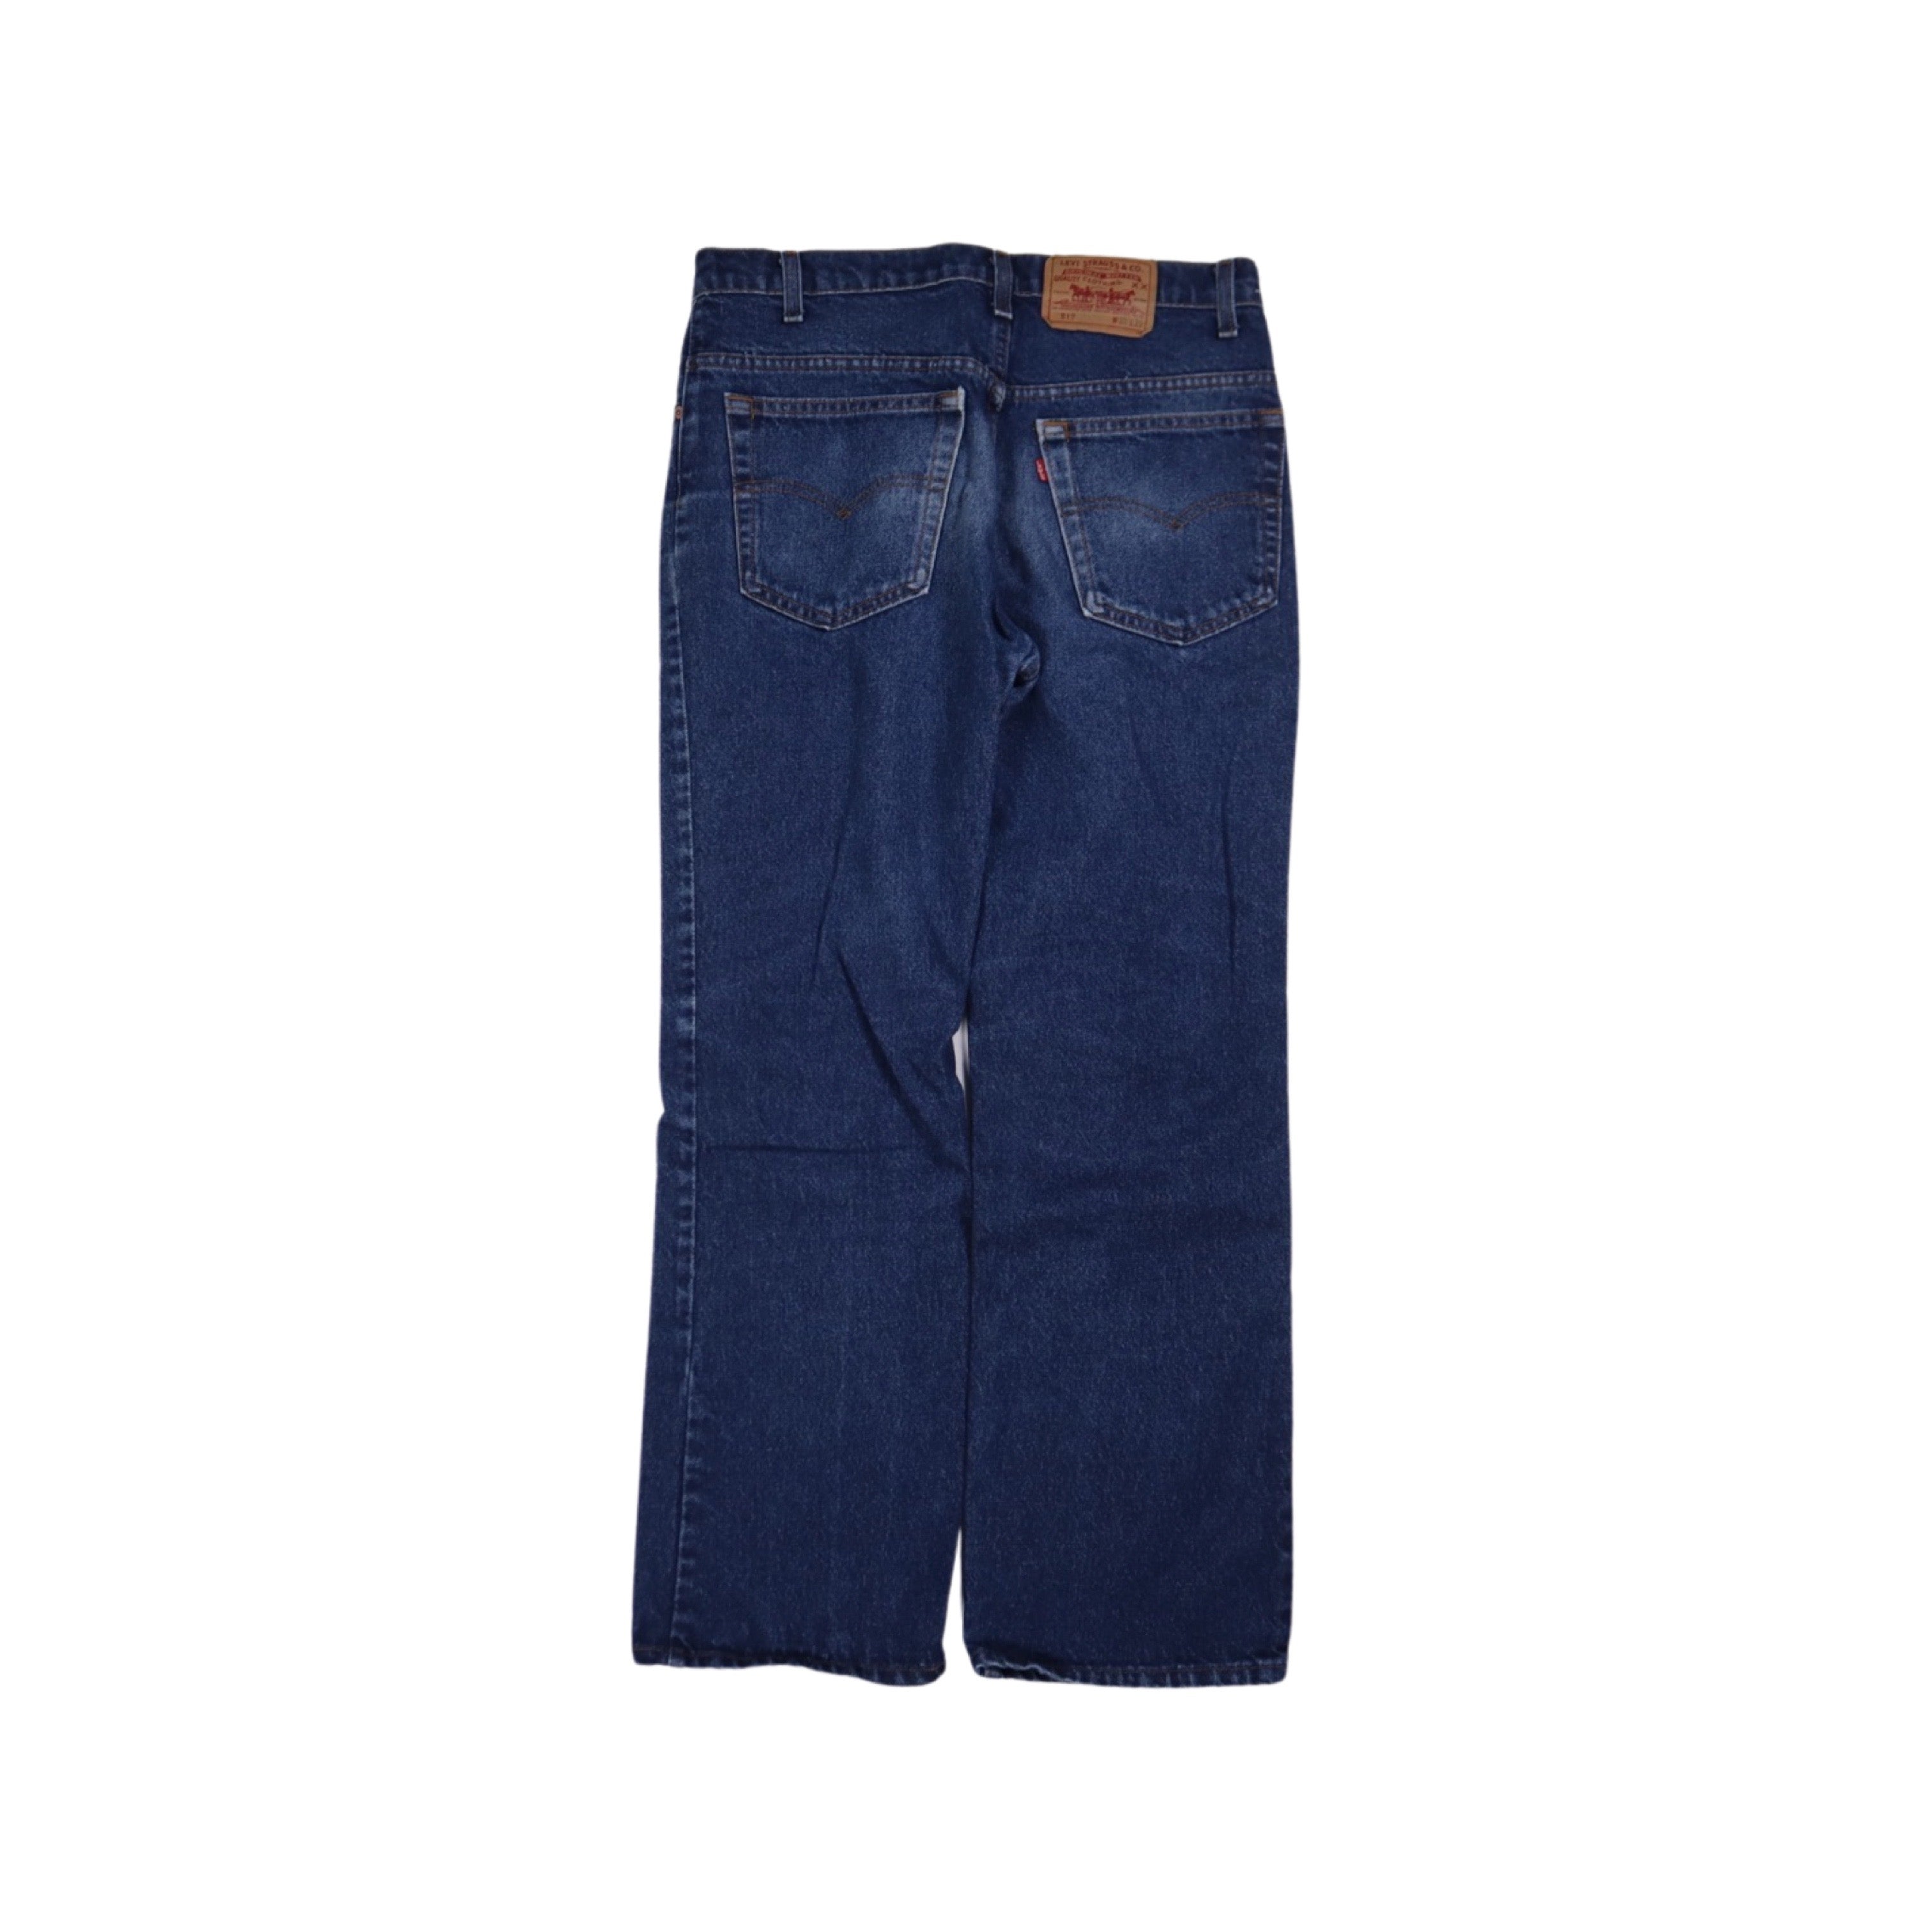 Levis 517 Bootcut Jeans 90s (32”)